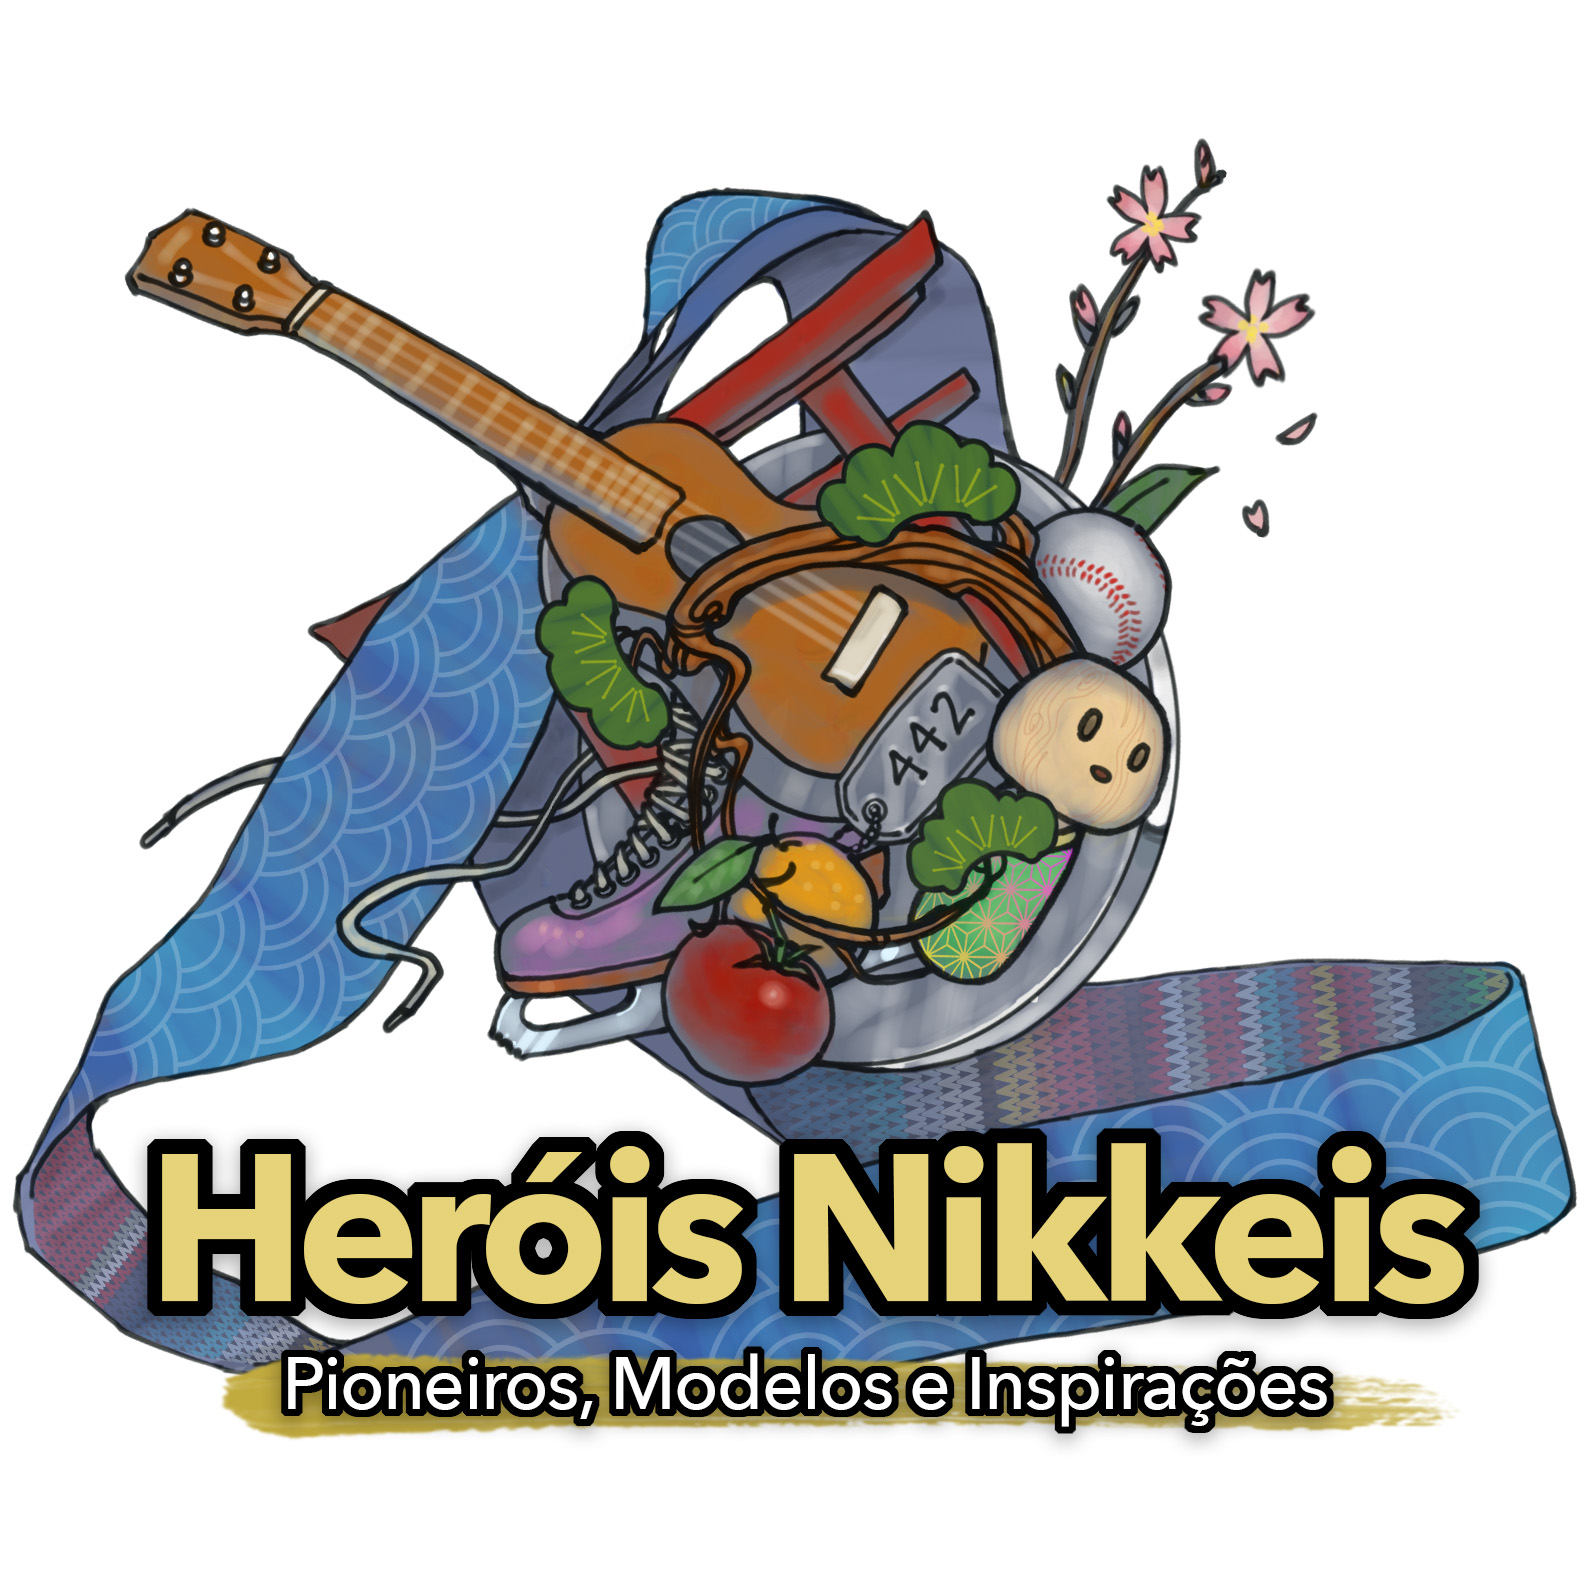 Heróis Nikkeis: Pioneiros, Modelos e Inspirações